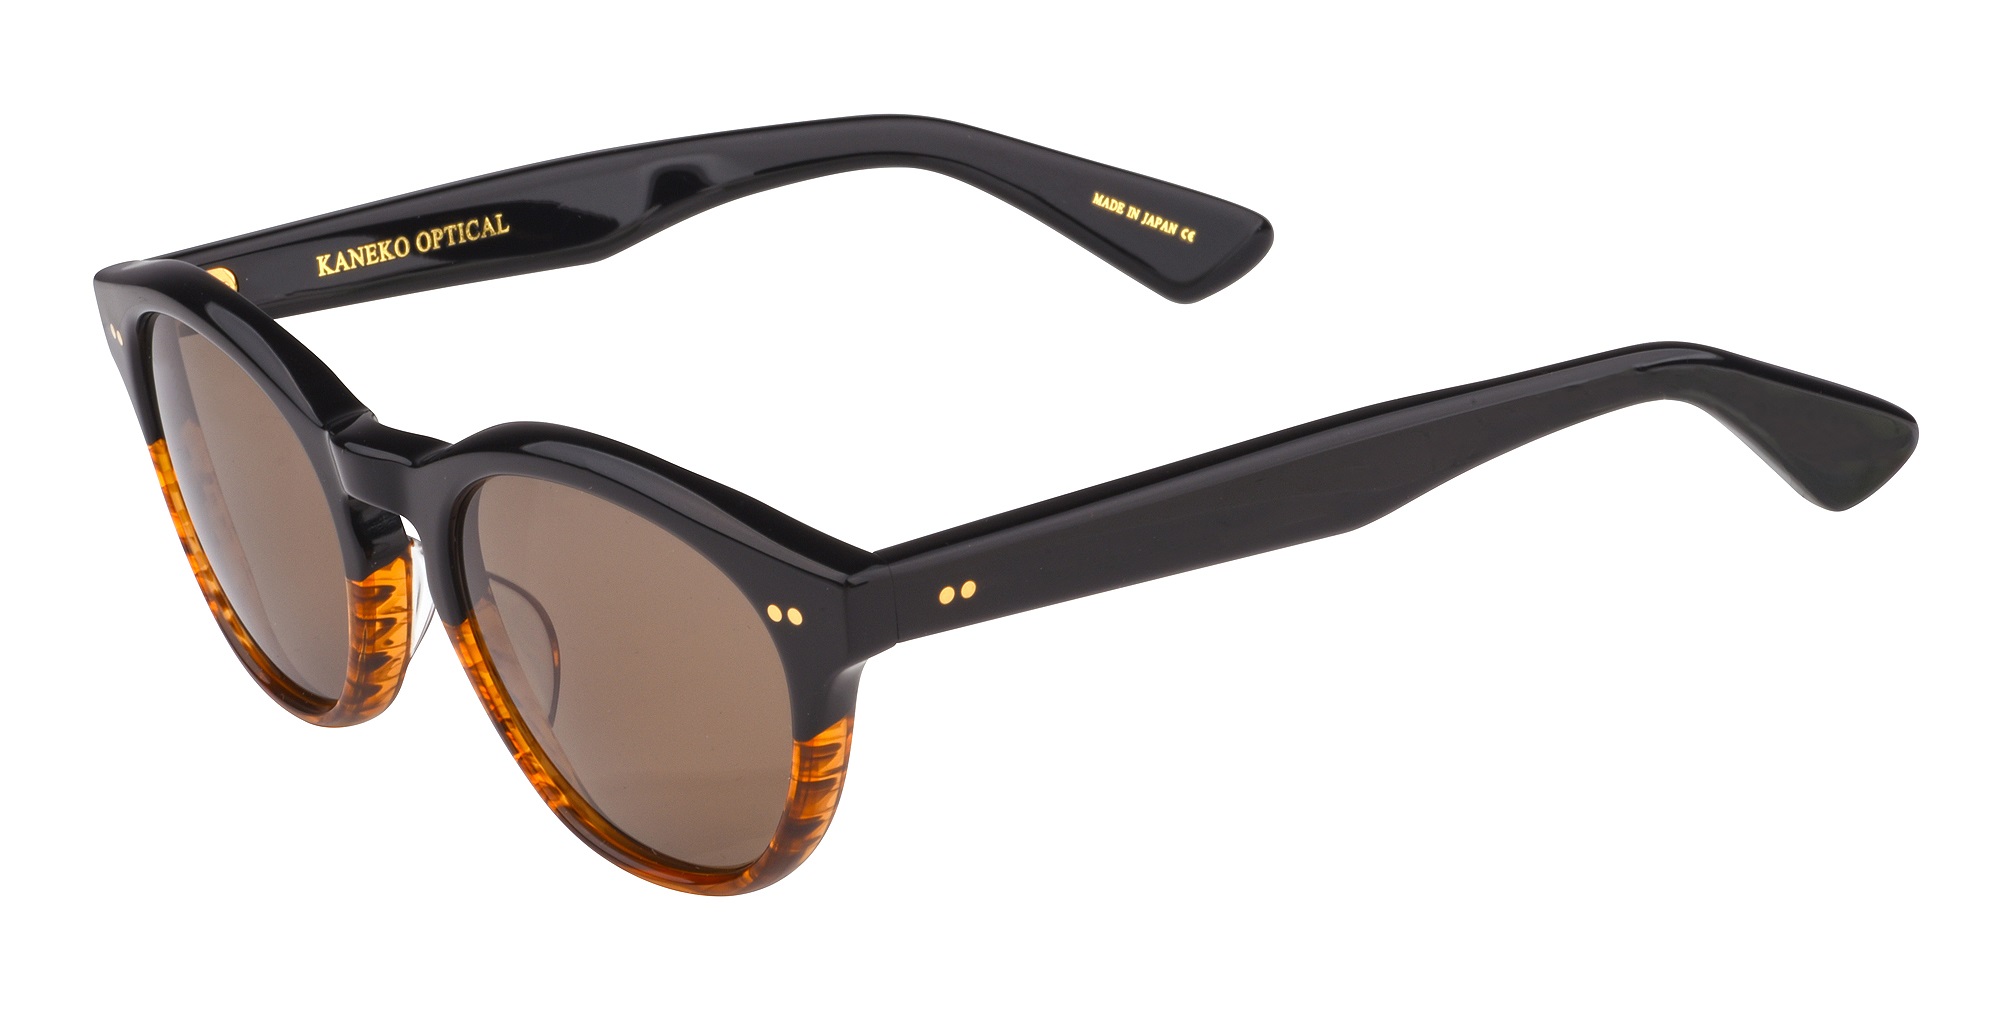 Lunettes de soleil Spro Sunglasses - KC68/CR39 - Black Half/Brown